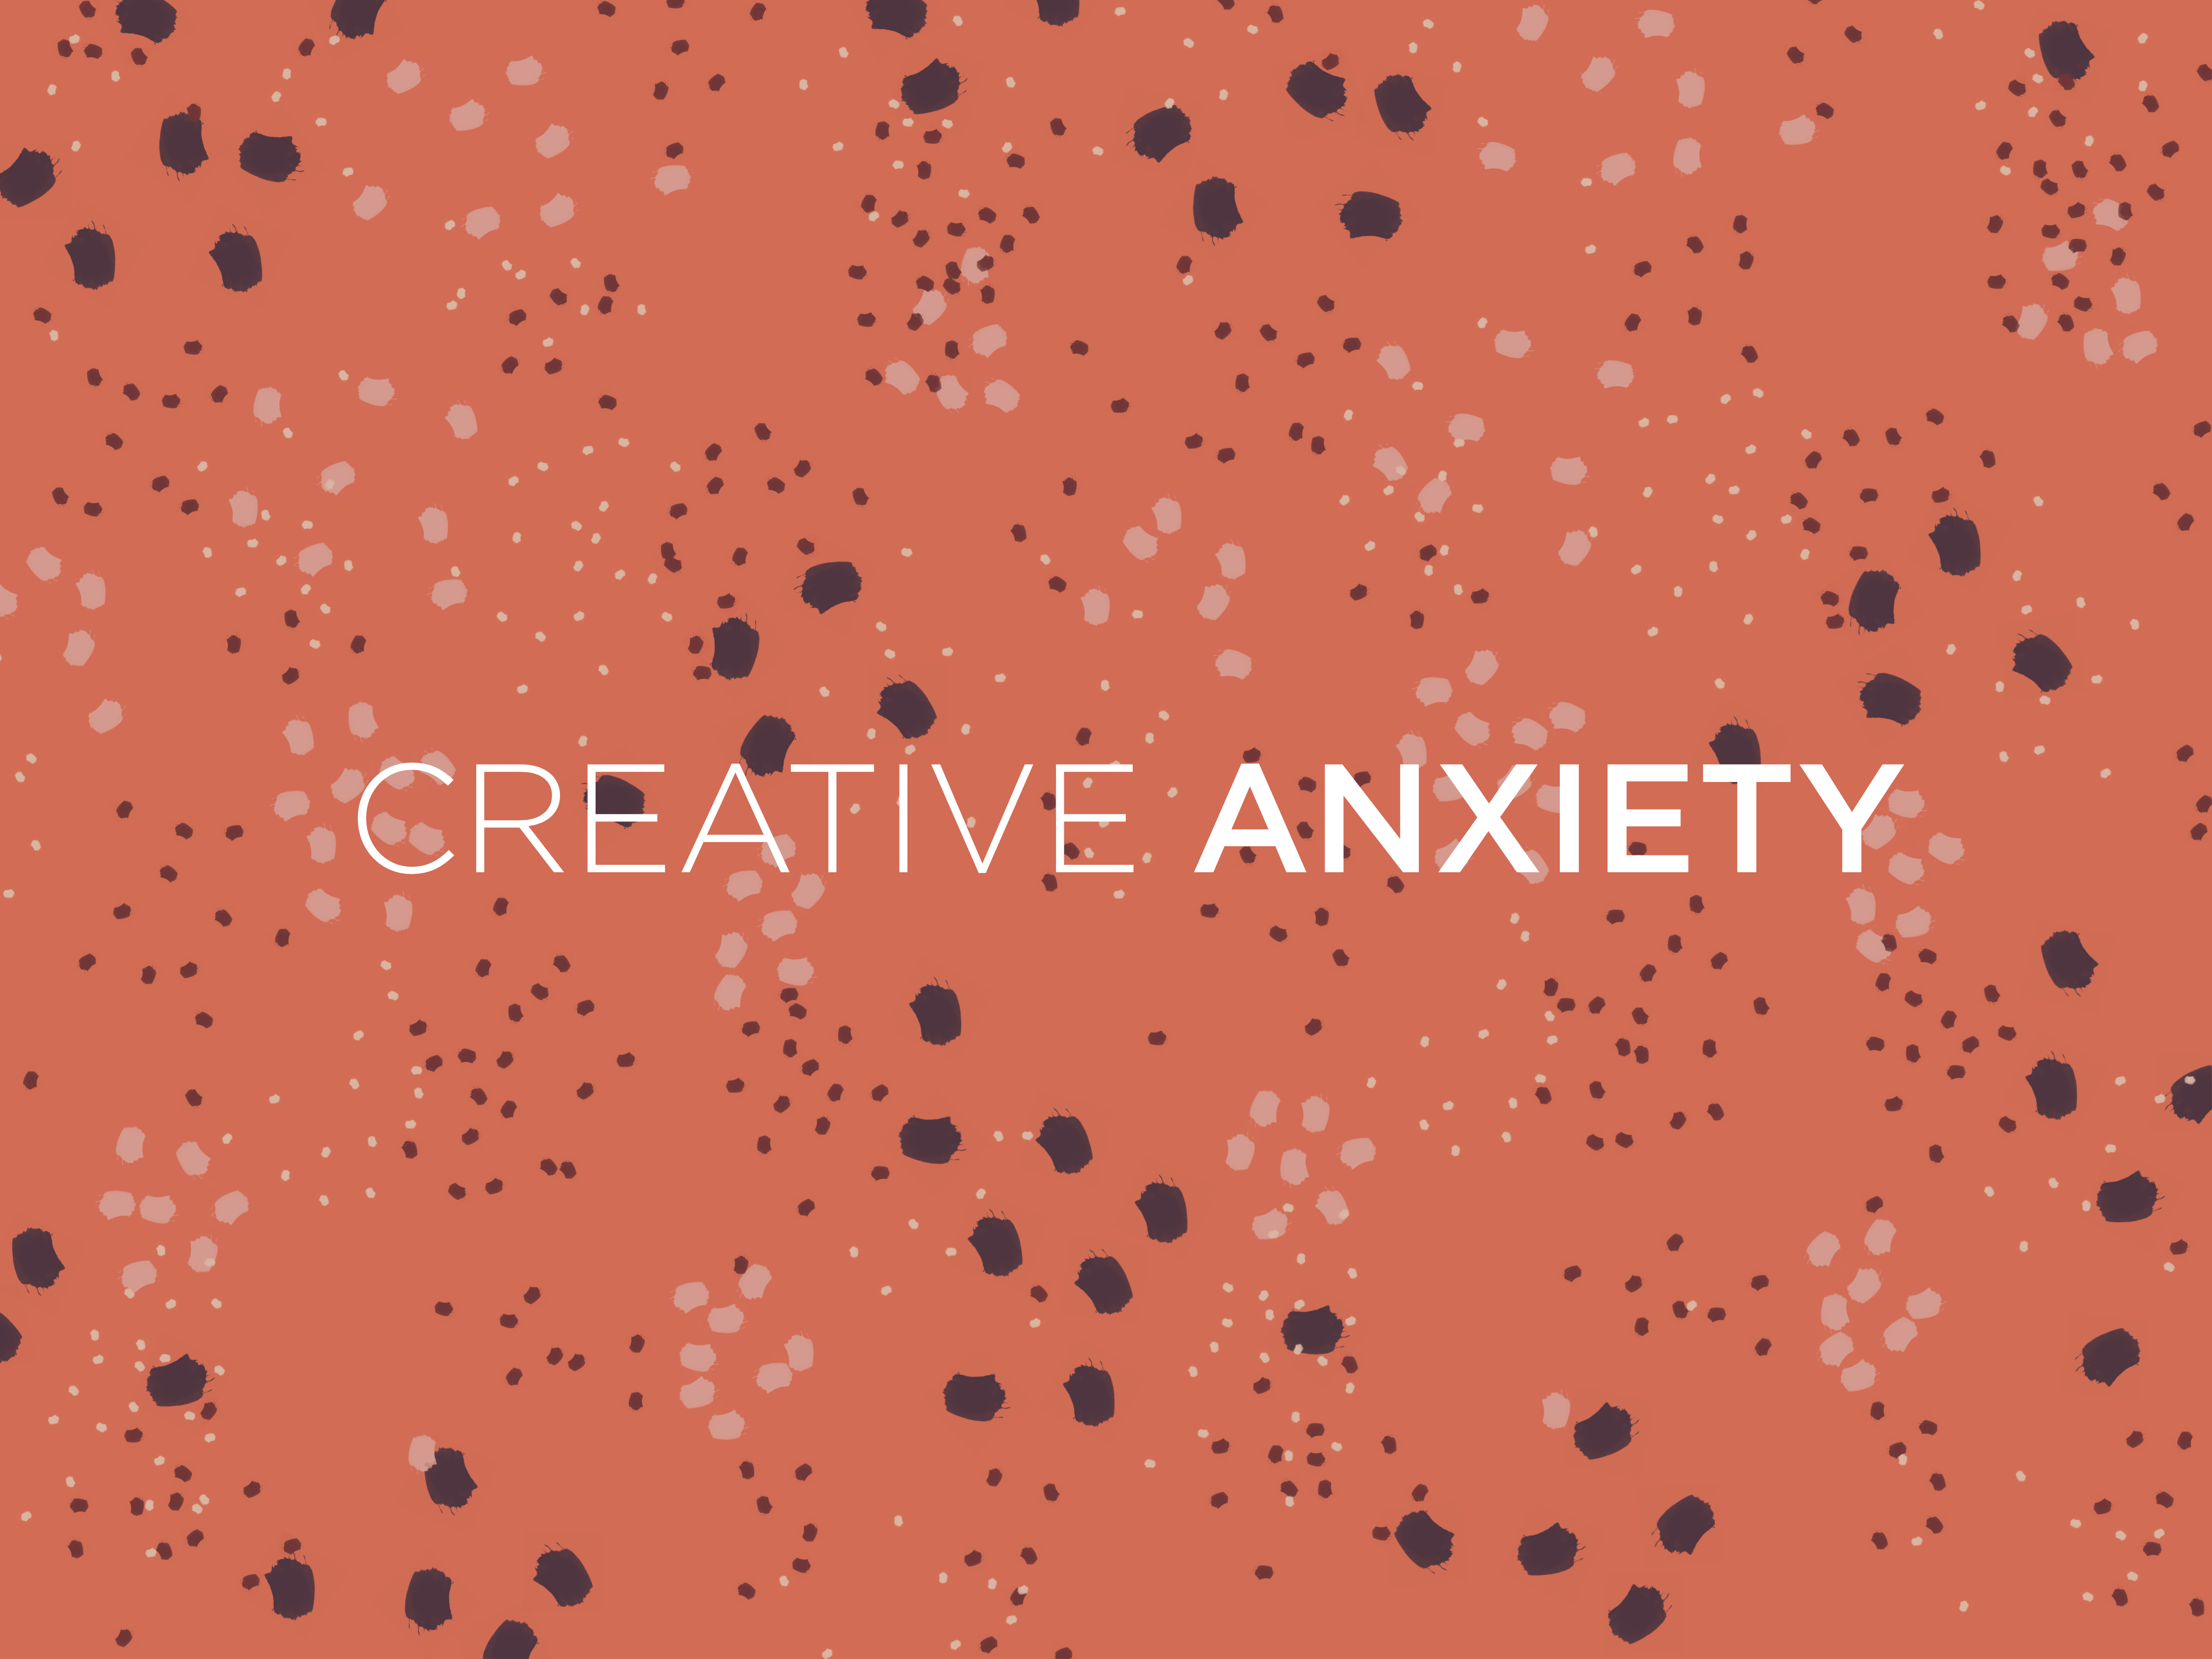 Creative anxiety